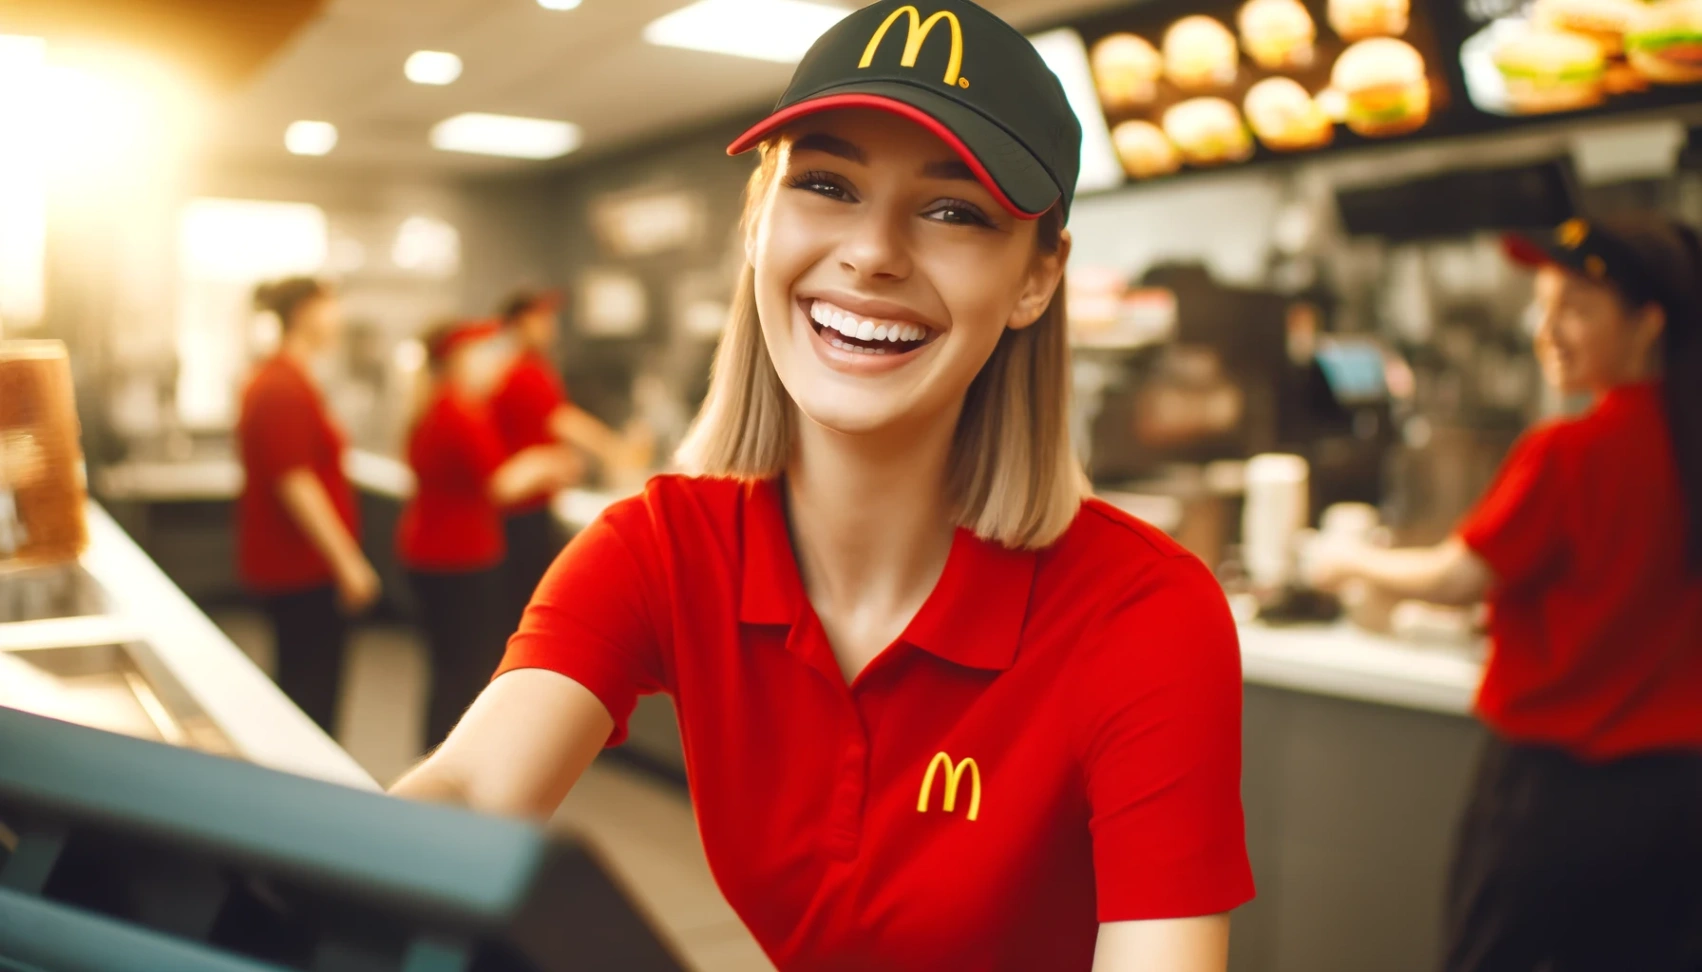 McDonald's Darbo Užklausa: Jūsų kelią į įdomias galimybes